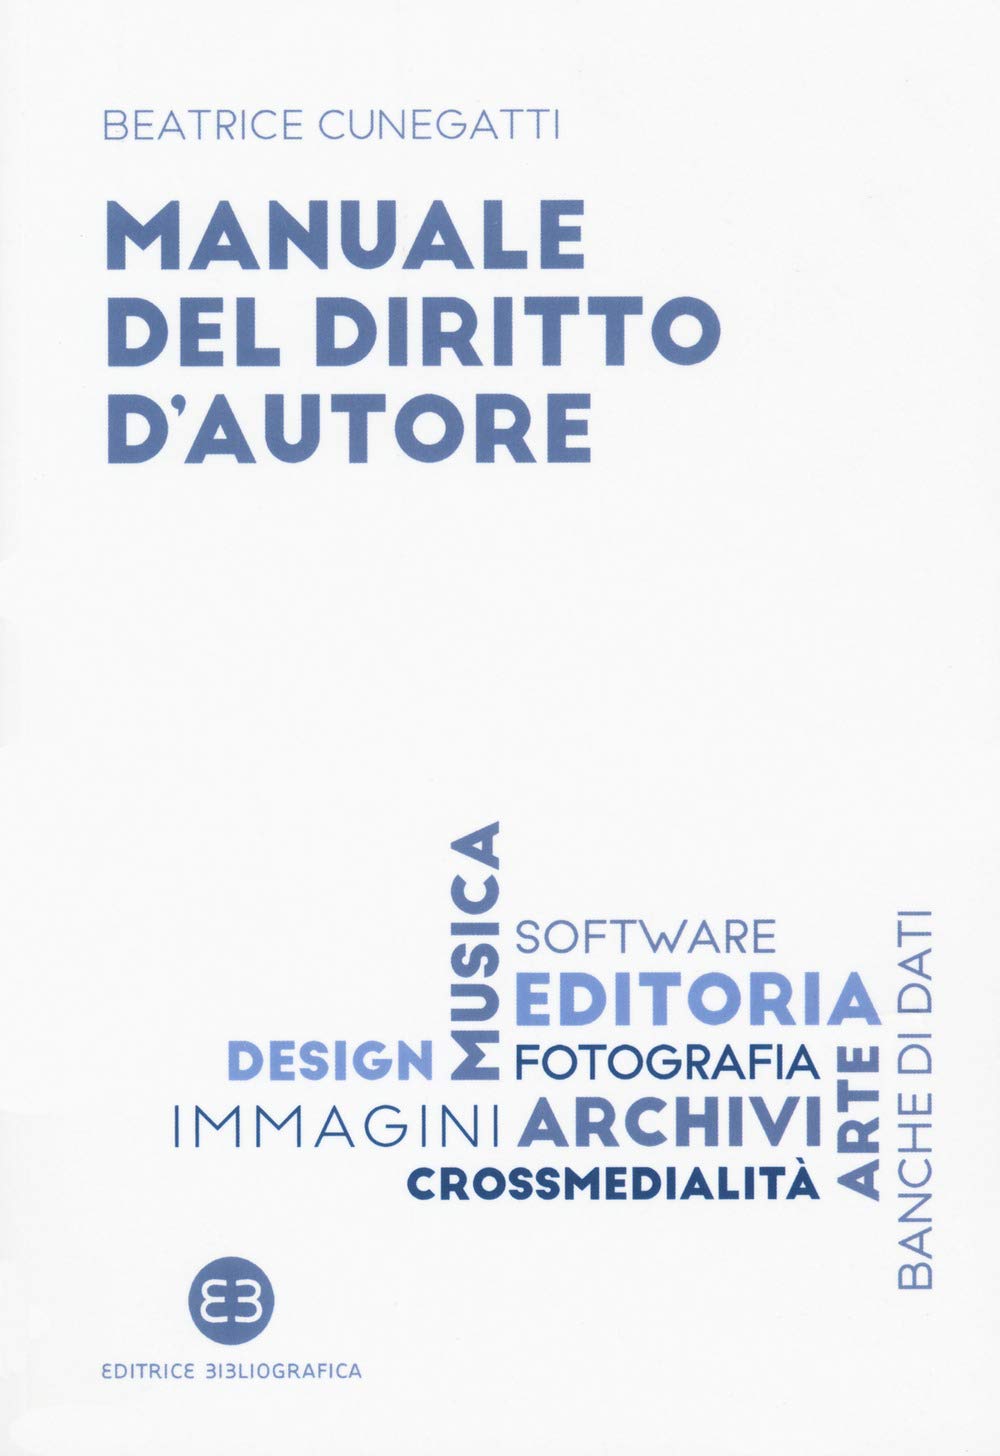 Libri Beatrice Cunegatti - Manuale Del Diritto D'autore NUOVO SIGILLATO, EDIZIONE DEL 20/02/2020 SUBITO DISPONIBILE